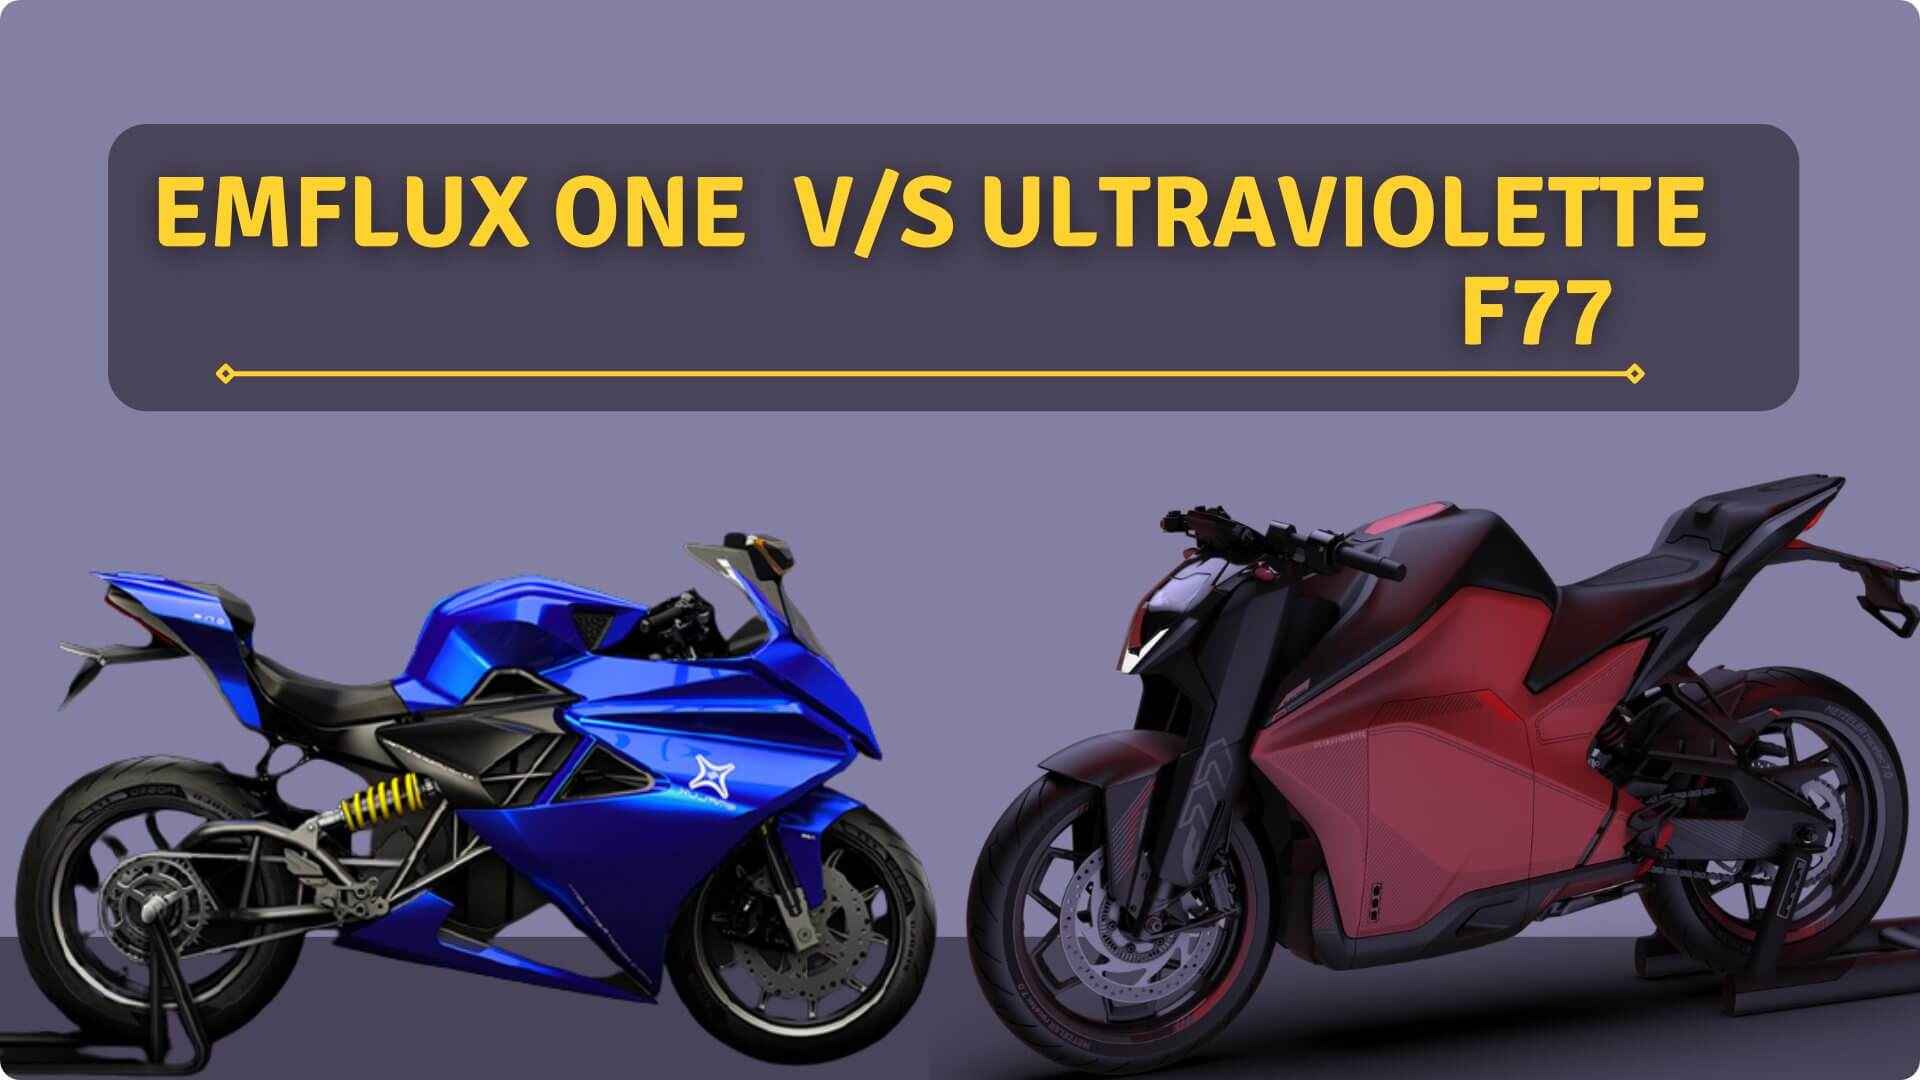 https://e-vehicleinfo.com/emflux-one-vs-ultraviolette-f77-best-electric-super-bike/